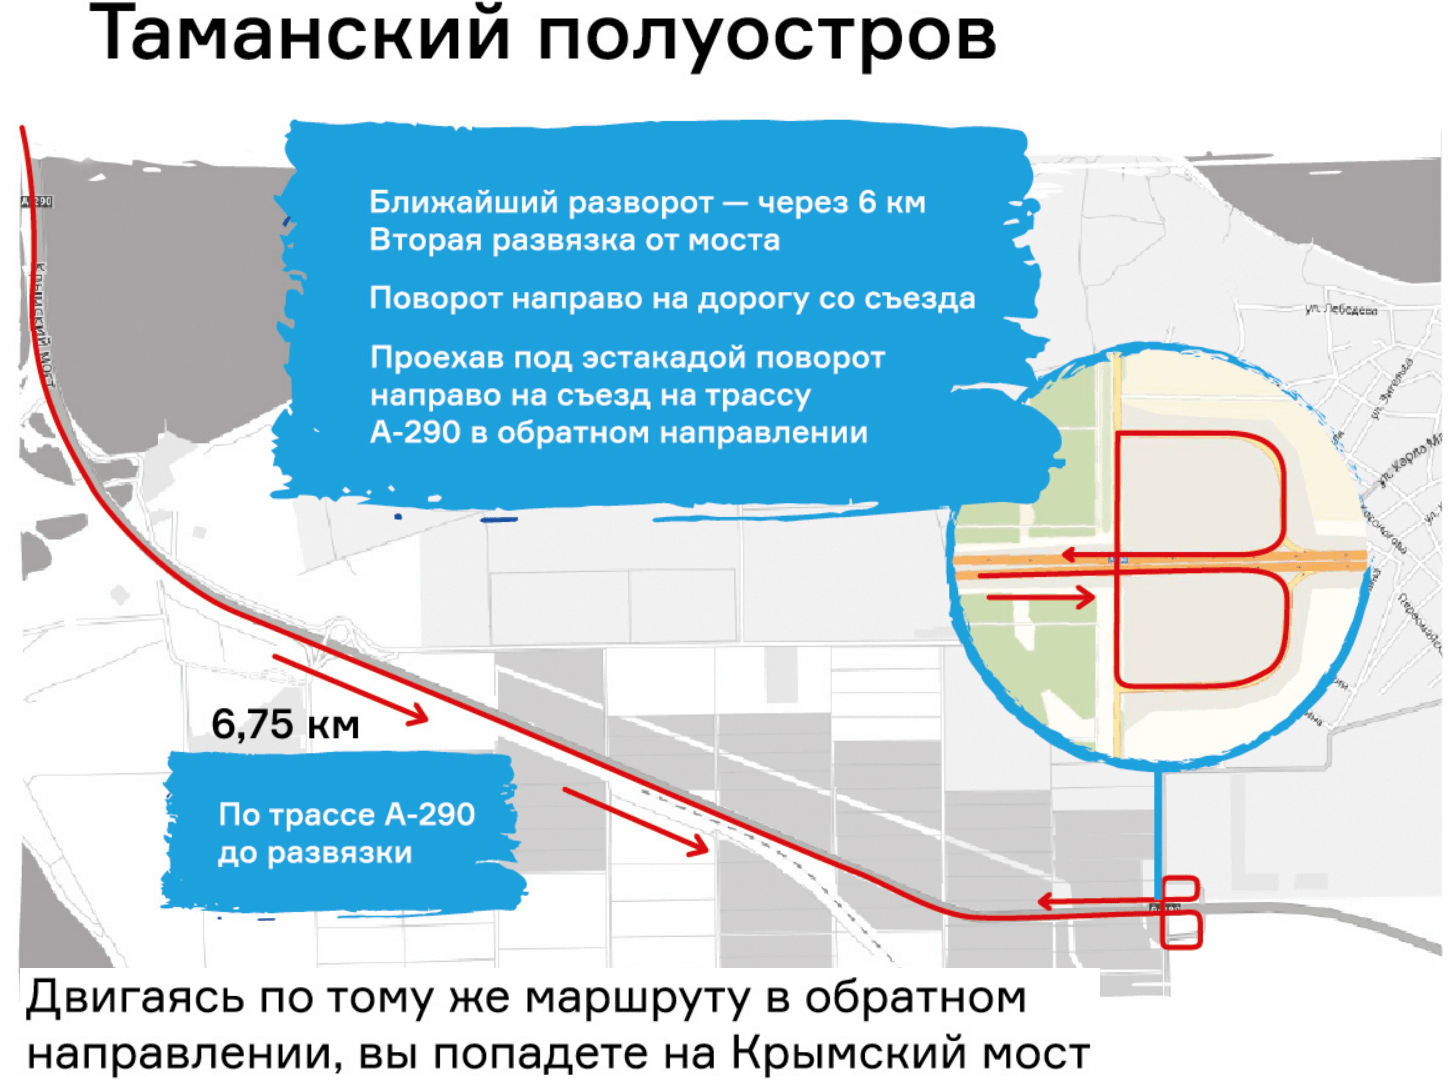 Карта проезда к Крымскому мосту